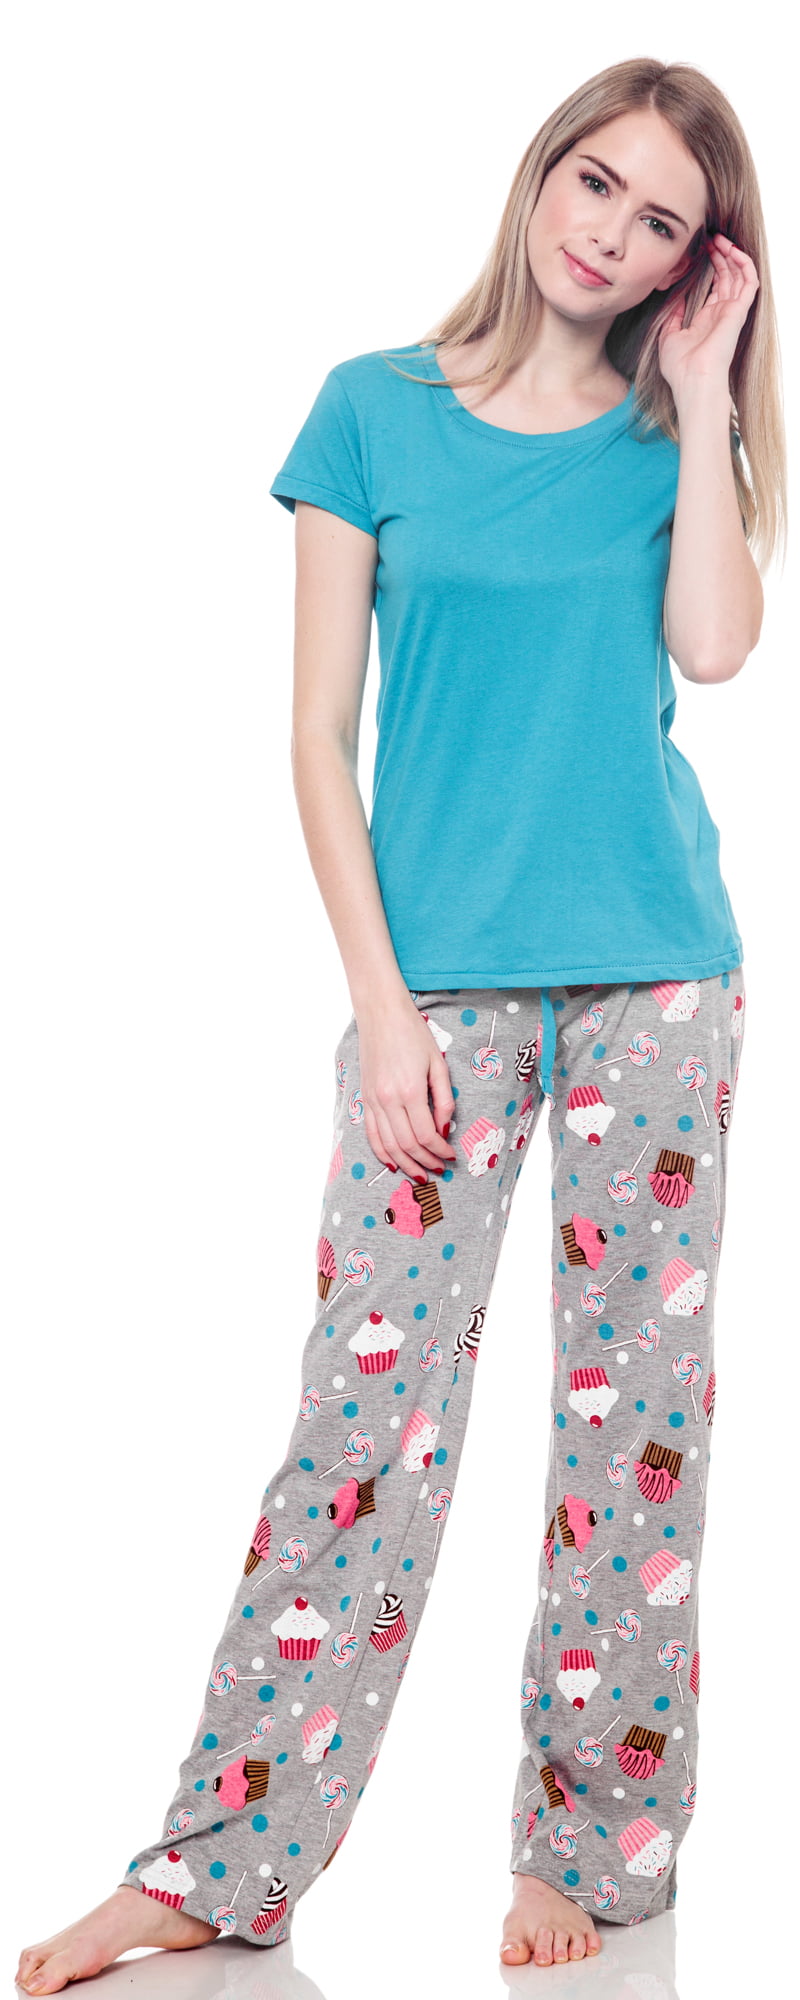 New Women/'s Pajamas Joe Boxer 2 Piece Sets Plush Set  Check Drop Box You Chose